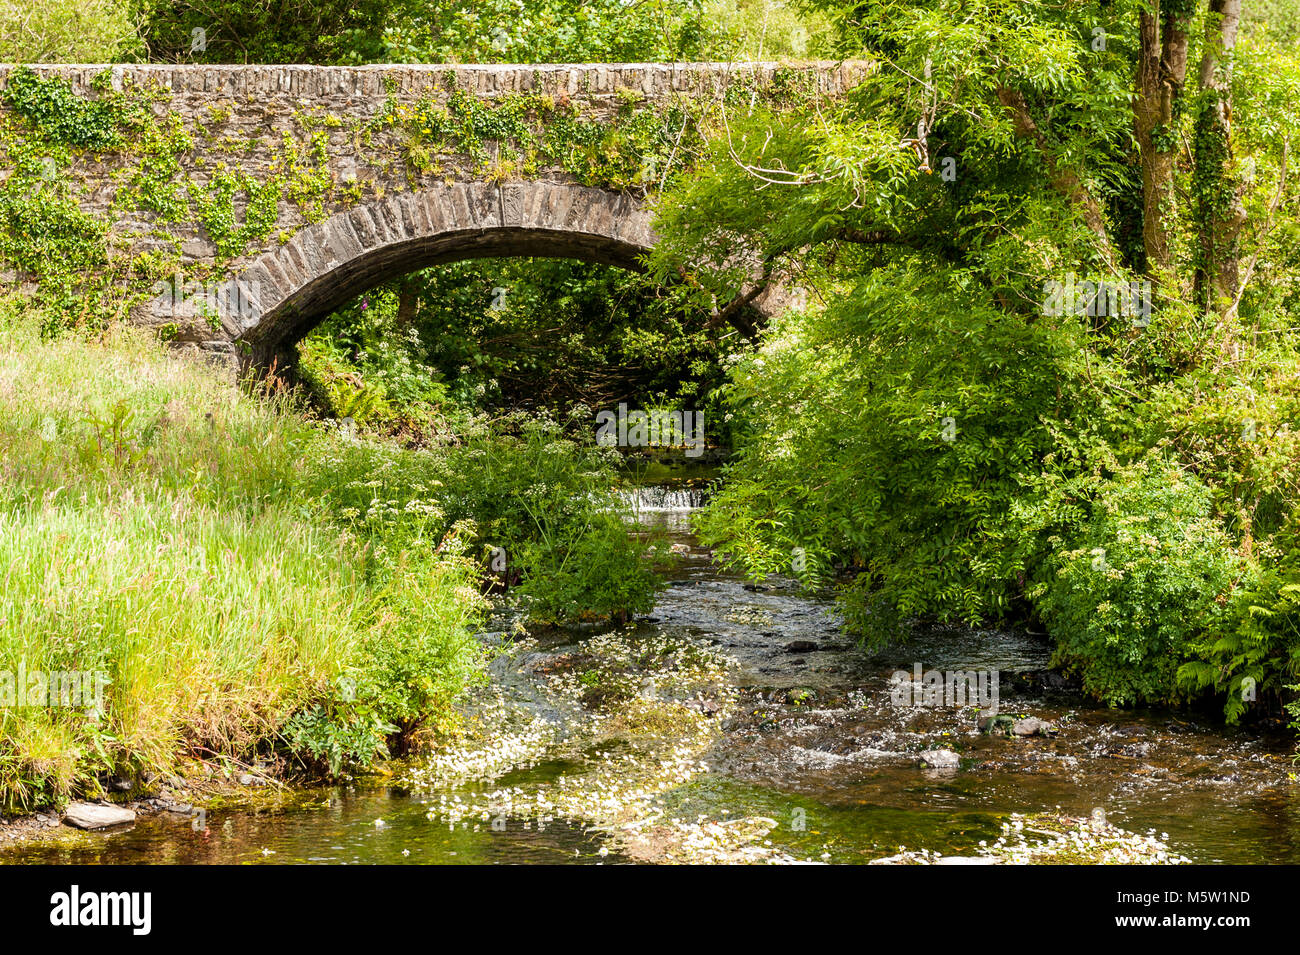 Puente de piedra y ladrillo sobre un río con árboles, arbustos y flora y fauna en el oeste de Cork, Irlanda. Foto de stock